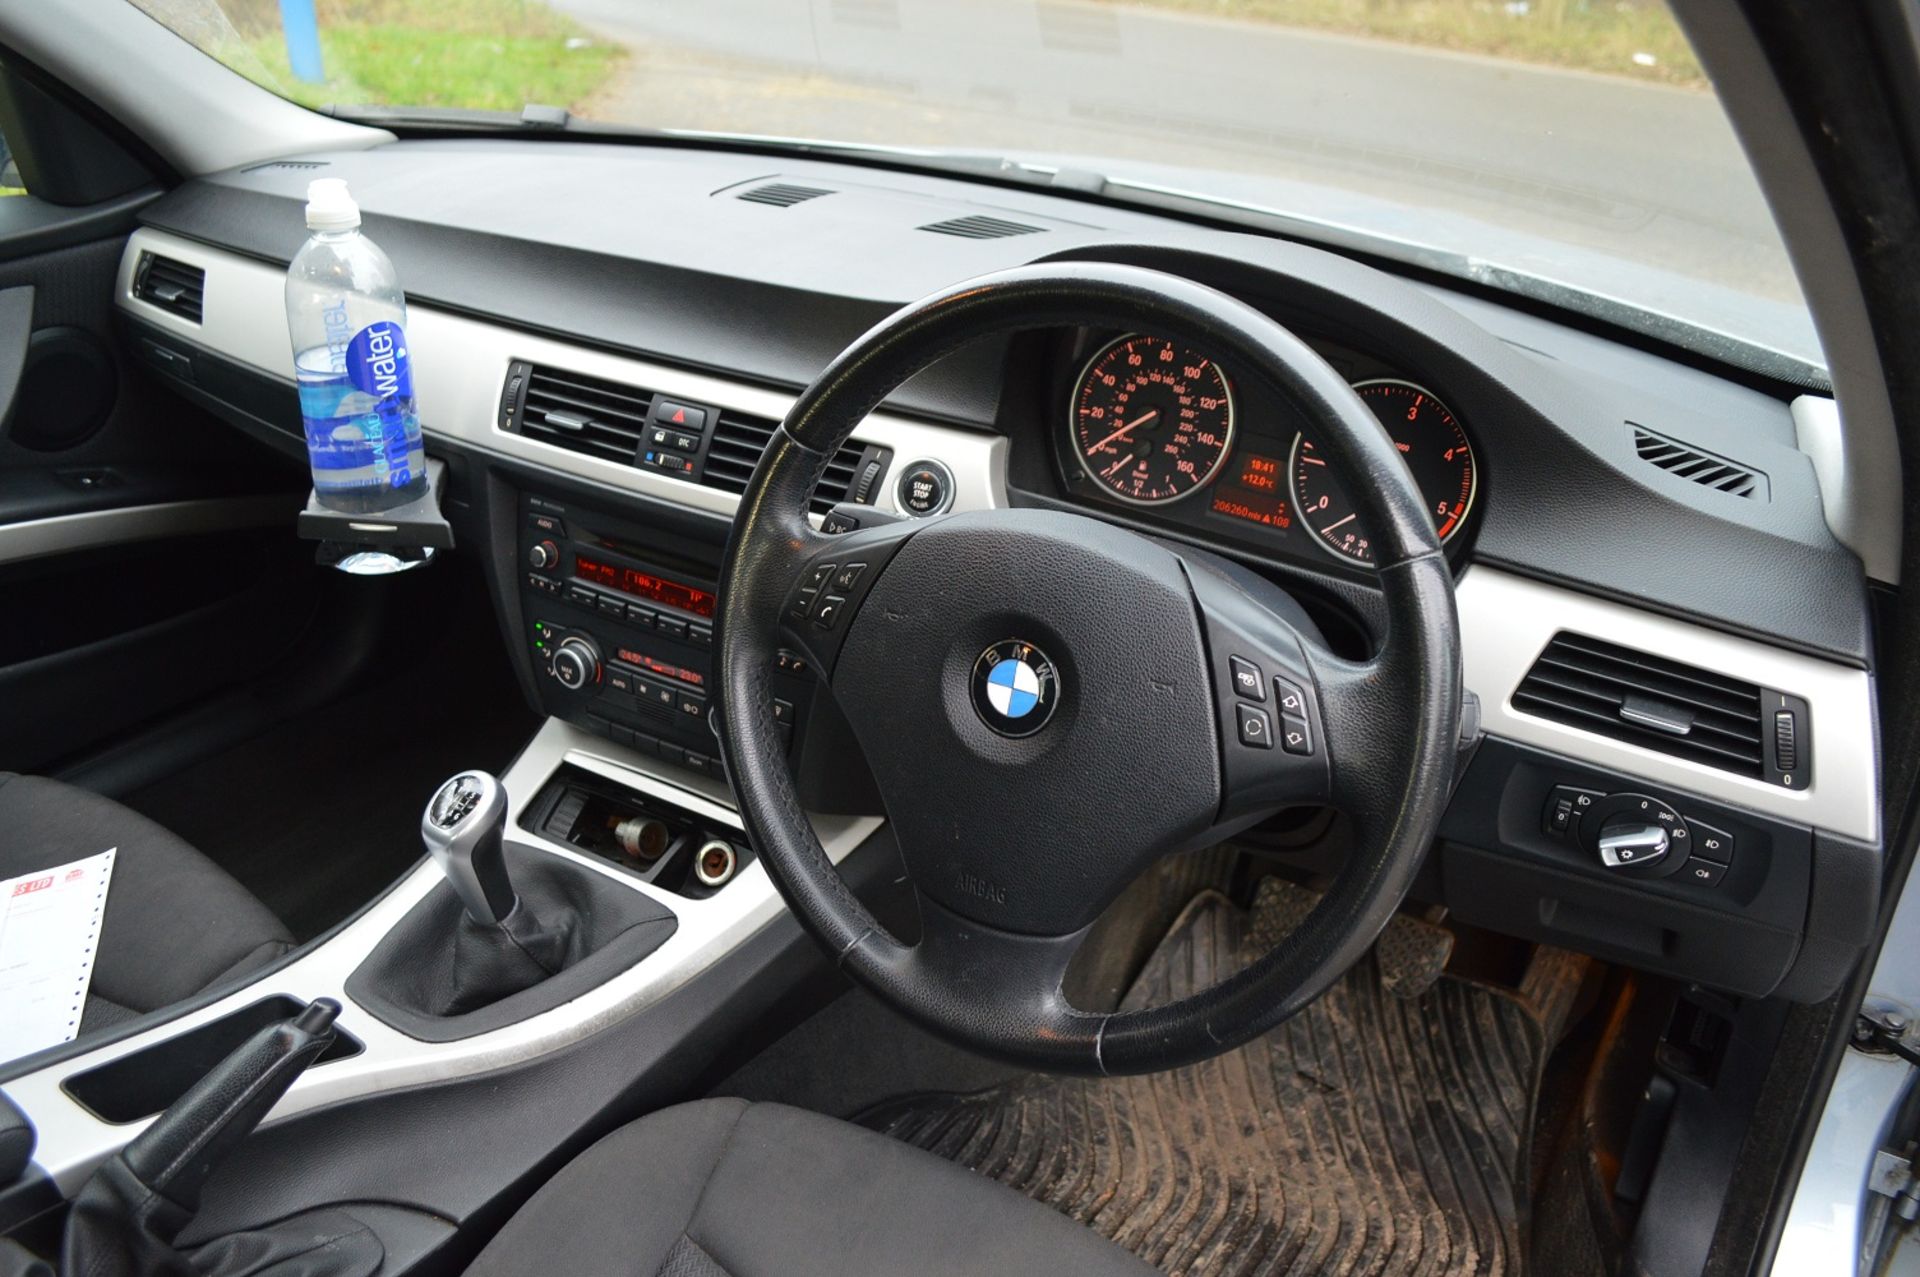 2008/58 REG BMW 318D SE BLUE DIESEL 4 DOOR SALOON, 6 SPEED MANUAL GEARBOX *NO VAT* - Image 13 of 16